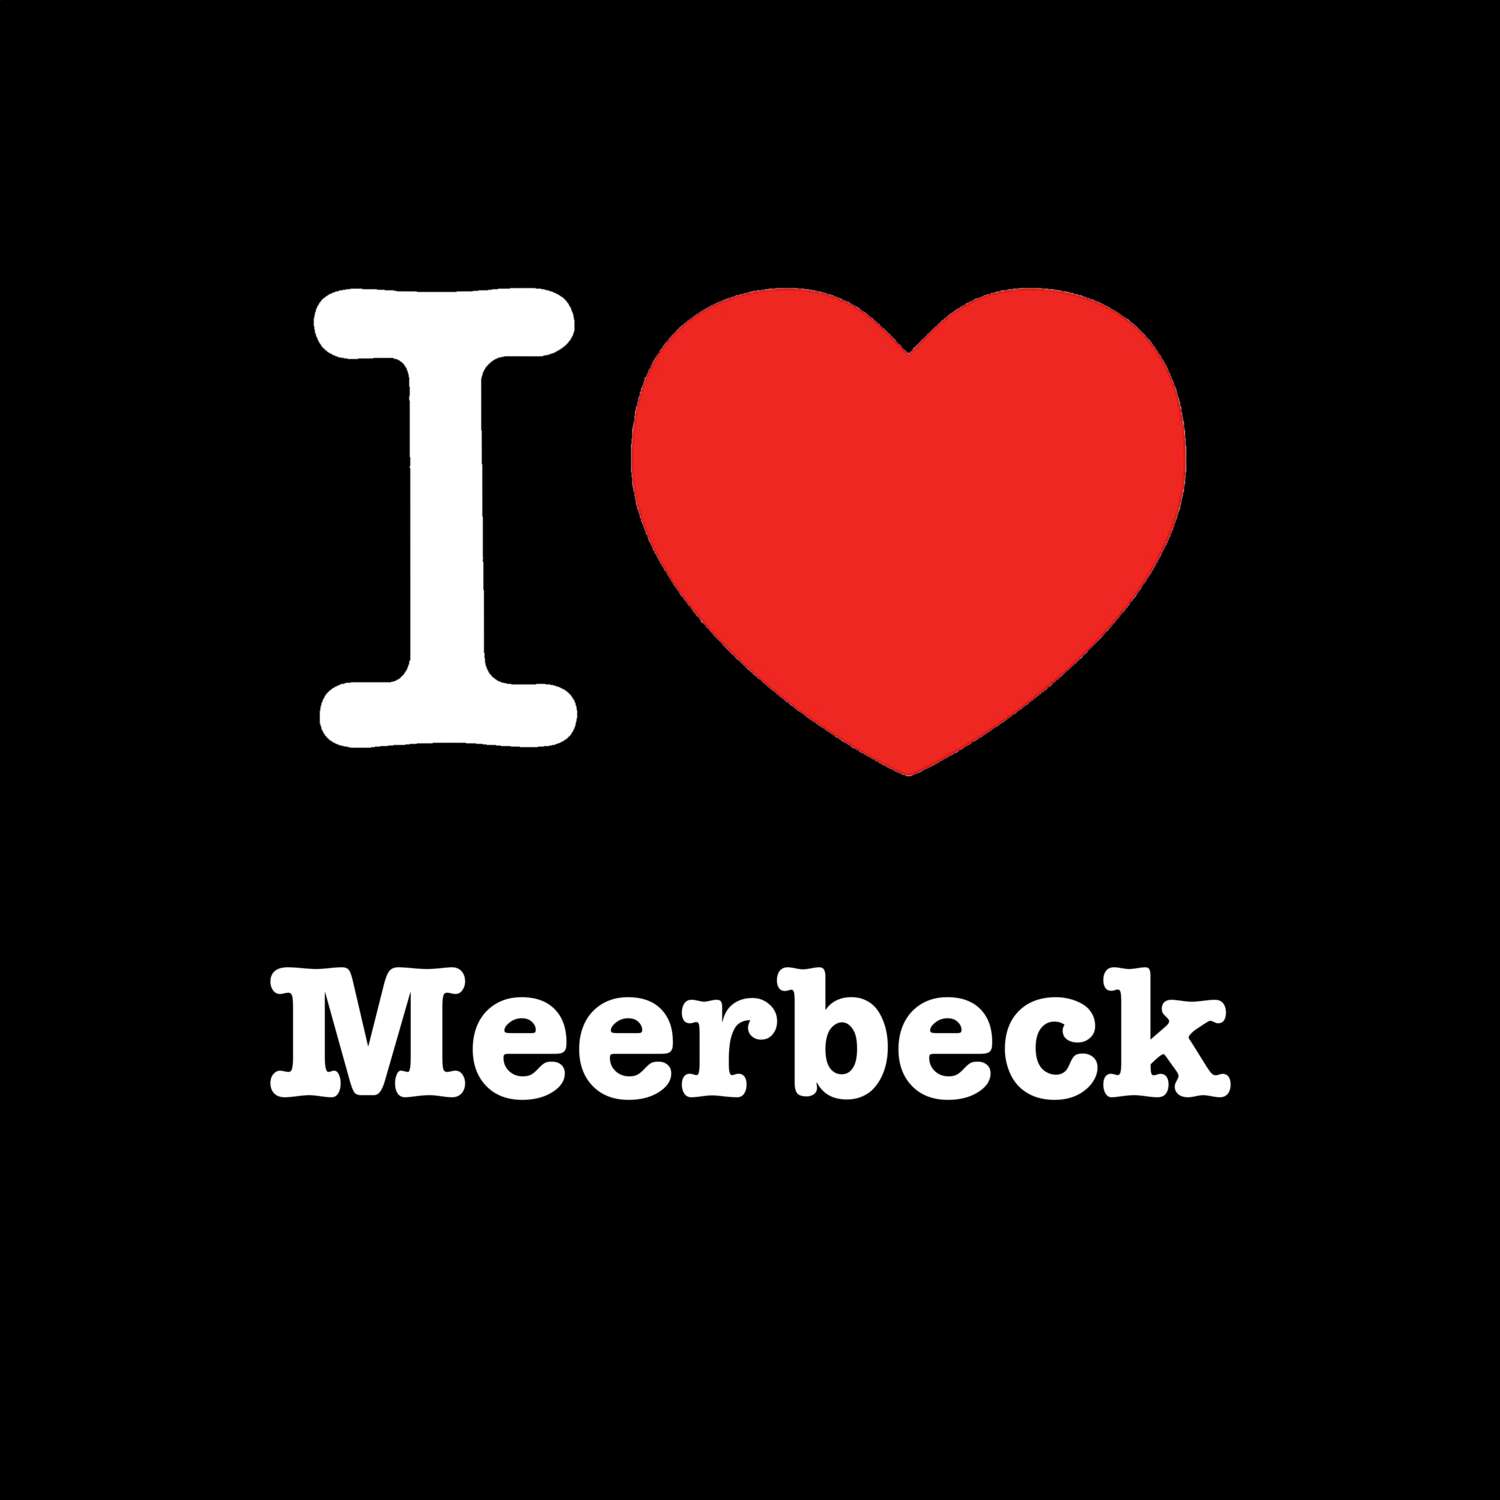 Meerbeck T-Shirt »I love«